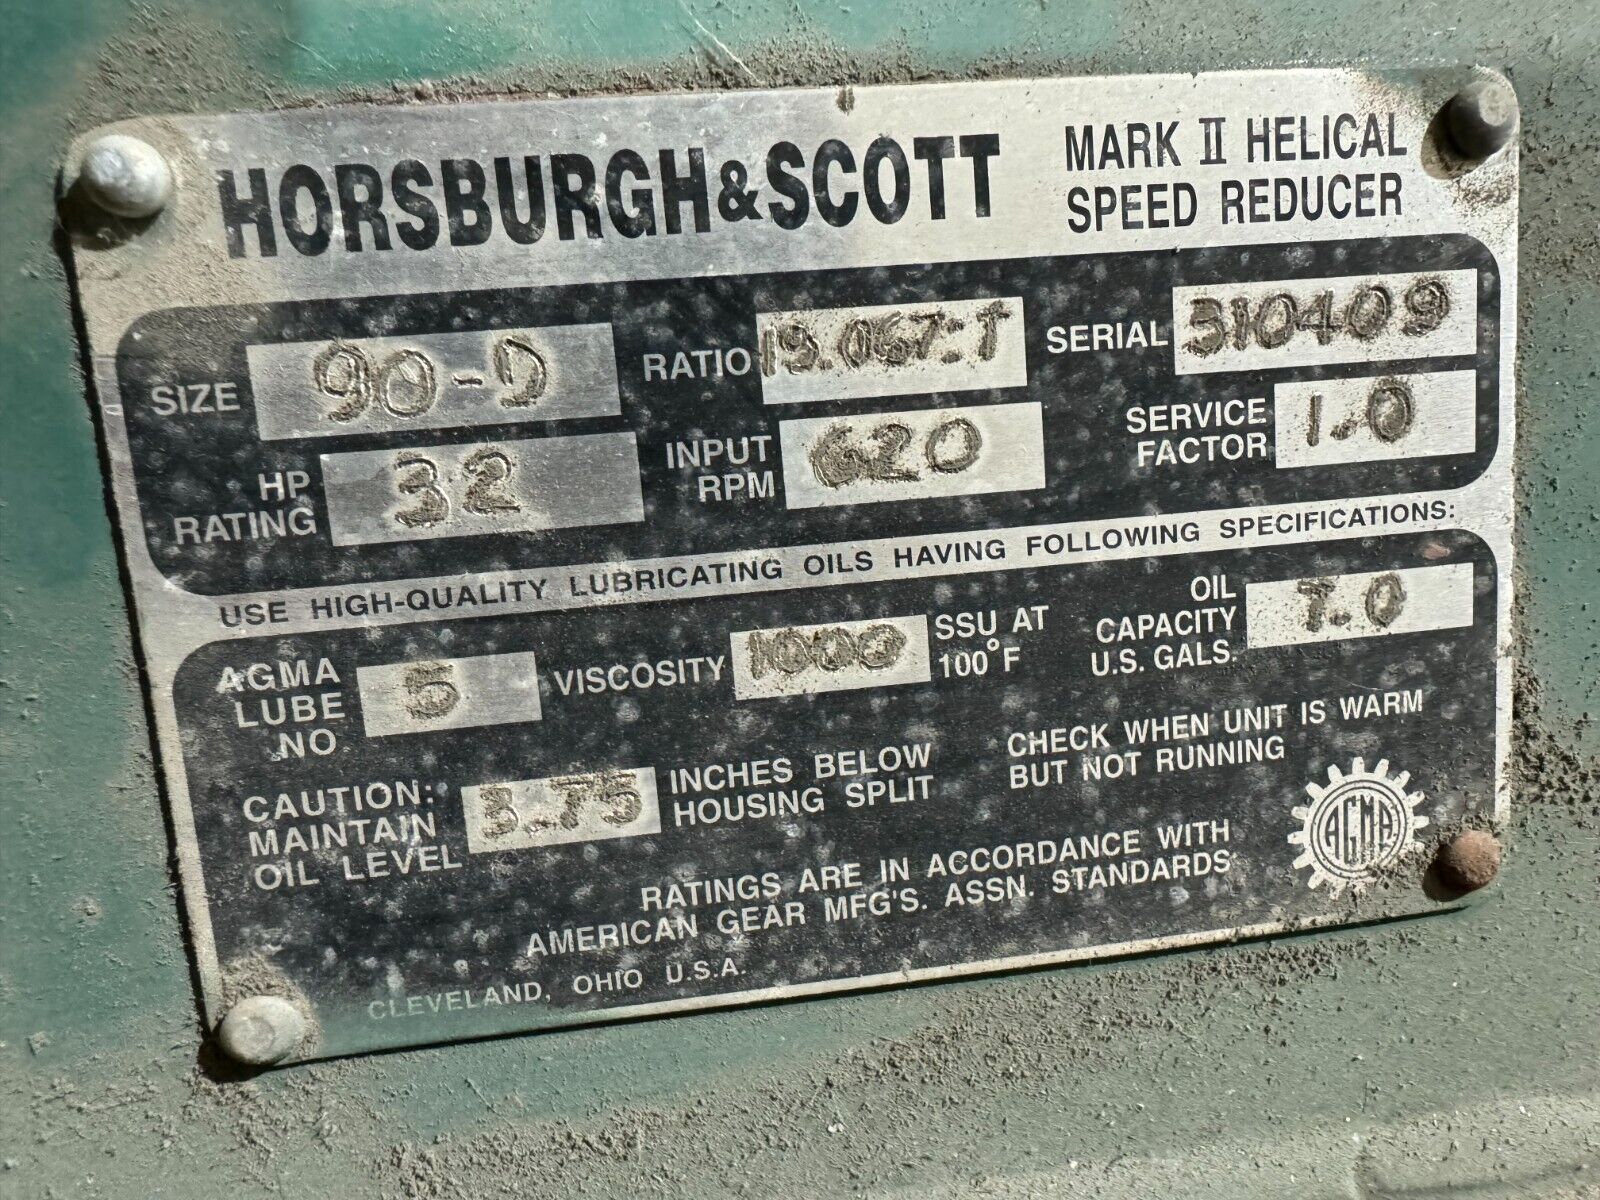 NEW HORSBURGH & SCOTT MARK II HELICAL SPEED REDUCER 19.067 RATIO GEAR BOX 90-D